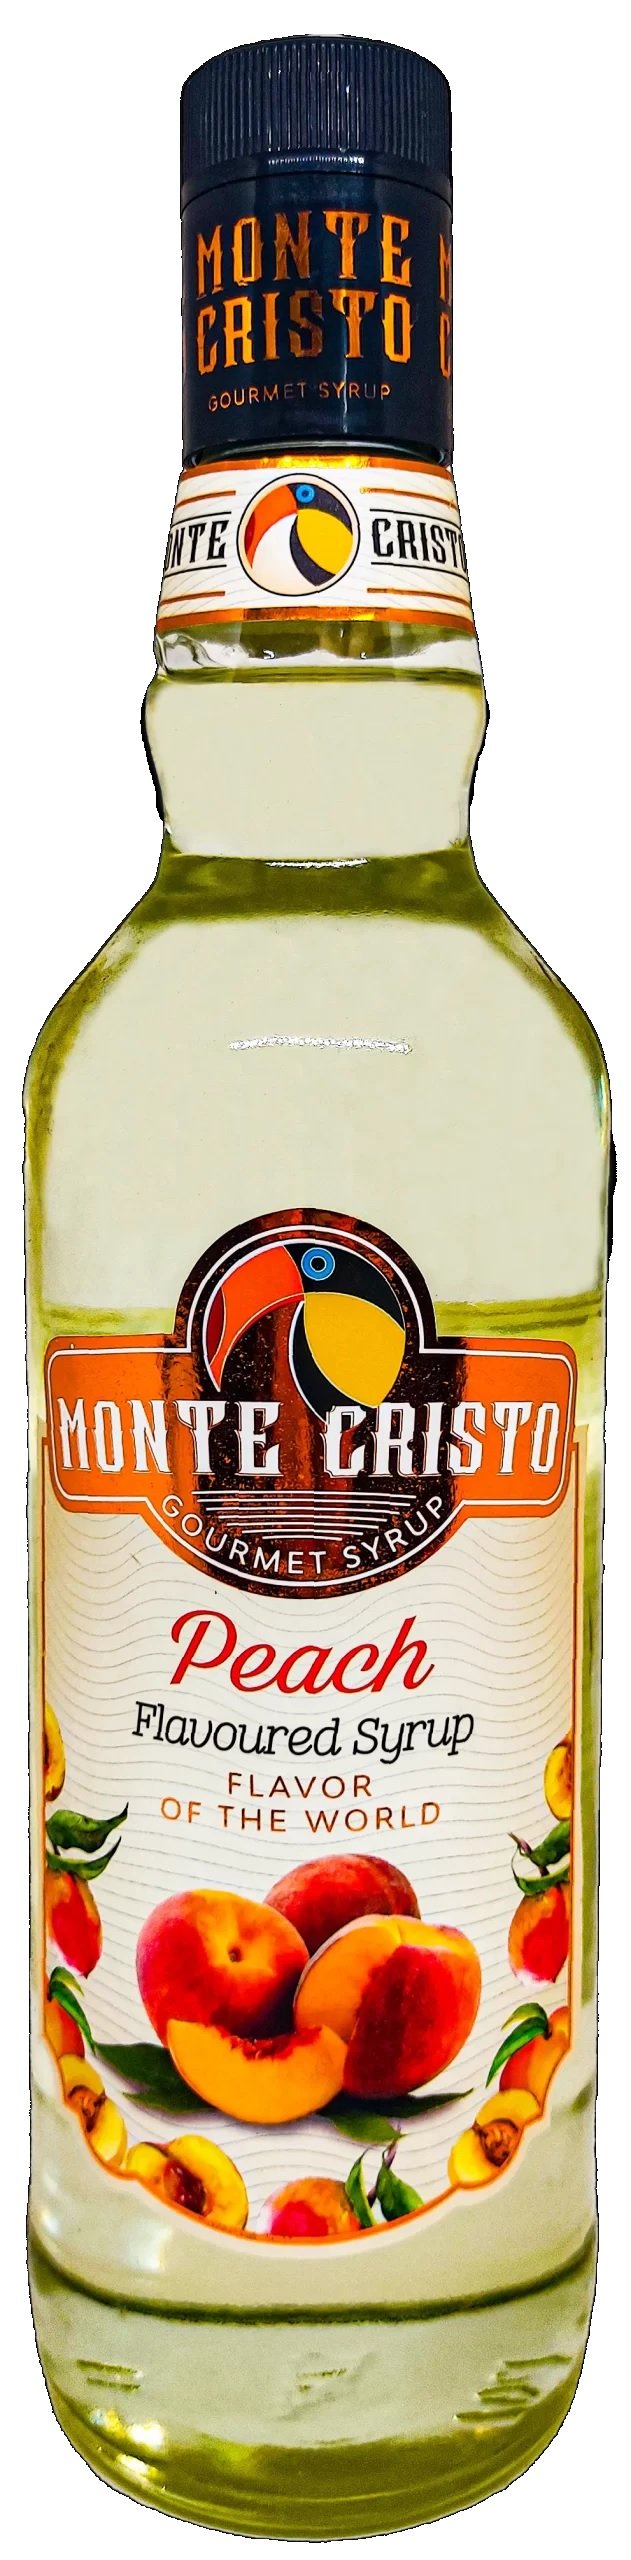 Monte Cristo Şeftali (Peach) Aromalı Şurup 700 ml.